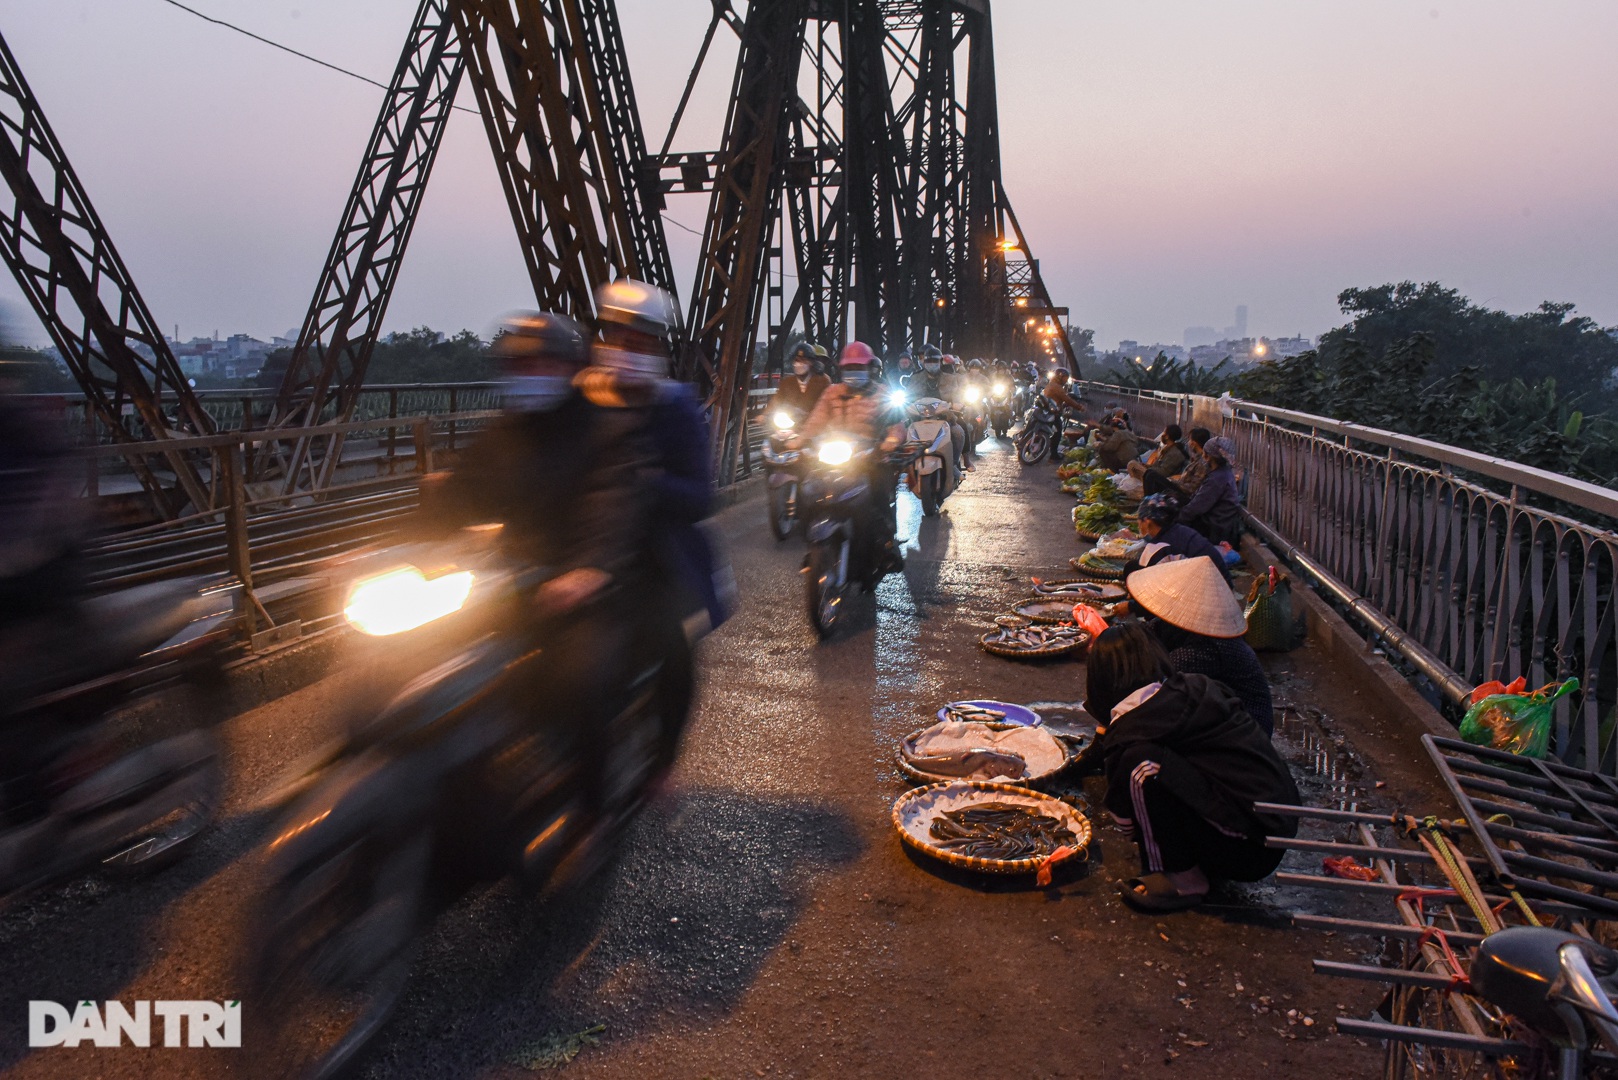 Cảnh họp chợ lộn xộn, giao thông ùn ứ trên cây cầu trăm tuổi ở Hà Nội - 2